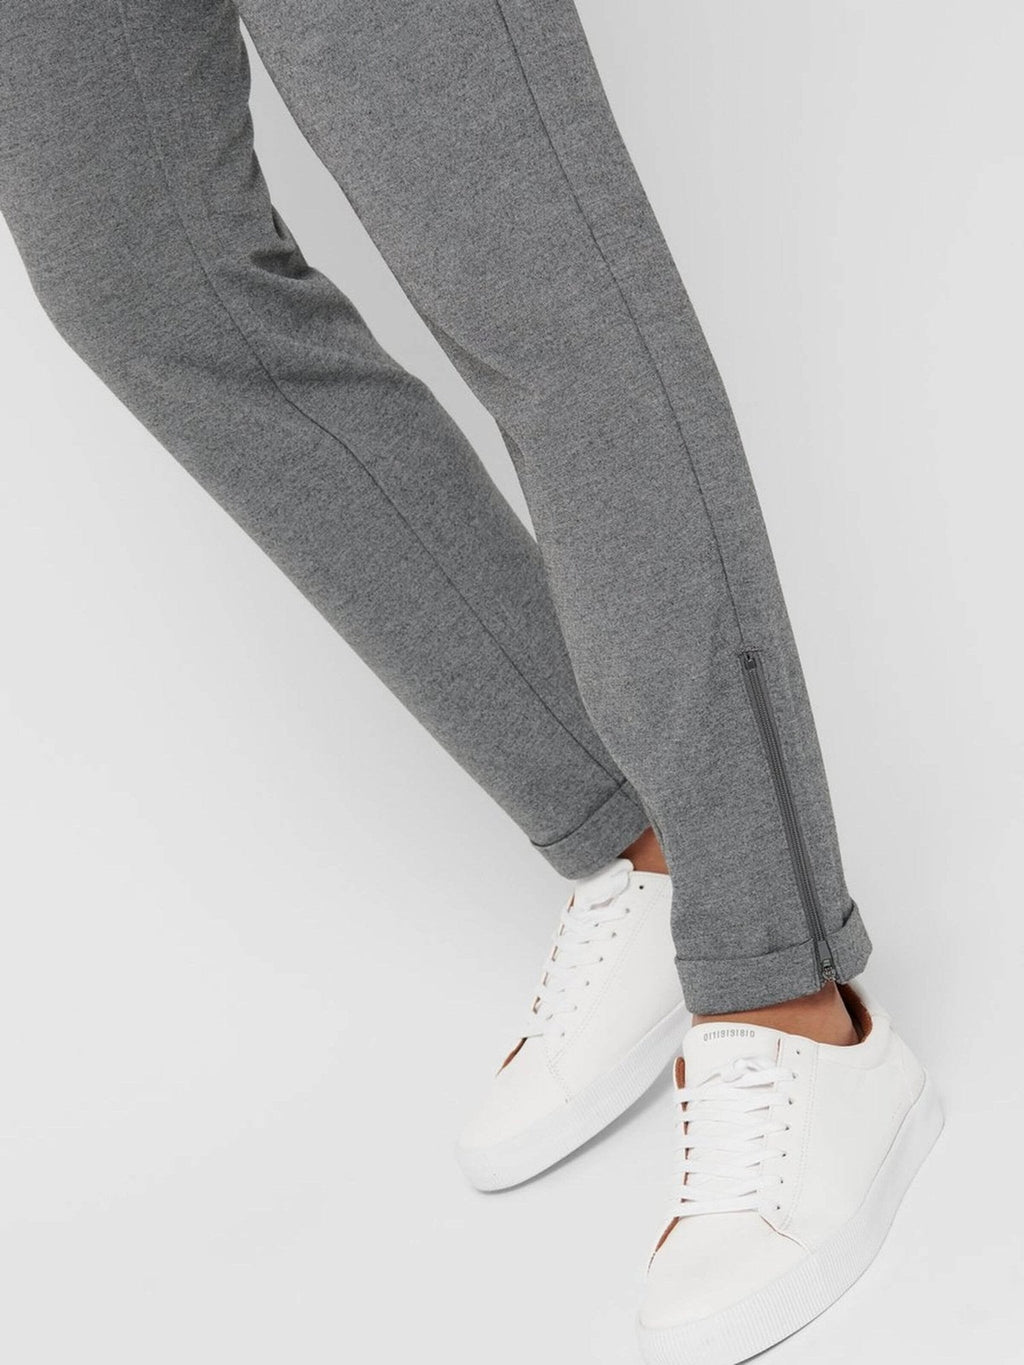 Mark Trousers Side zip - Light Grey